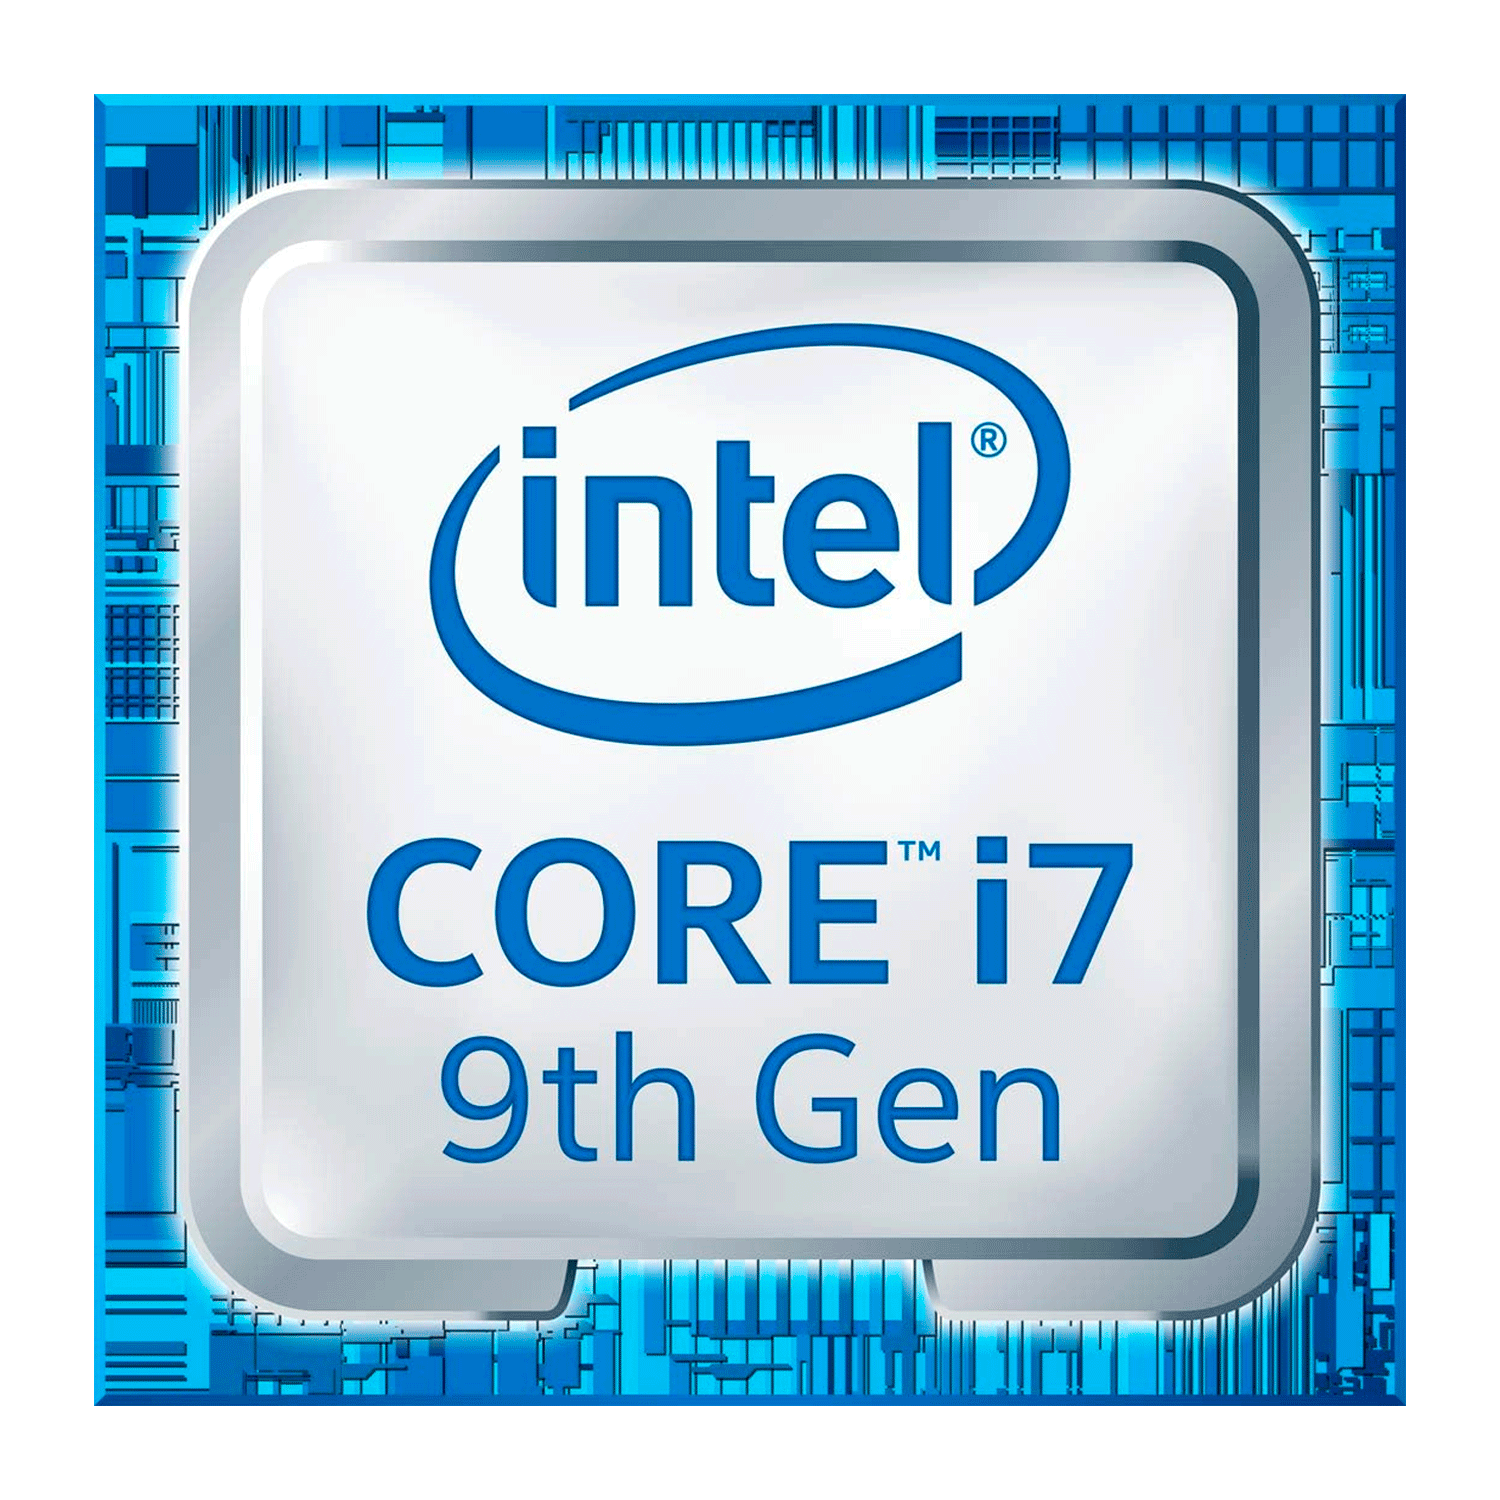 Processador Pull Intel Core I7 9700 1151 / 8C / 8T / 12MB OEM